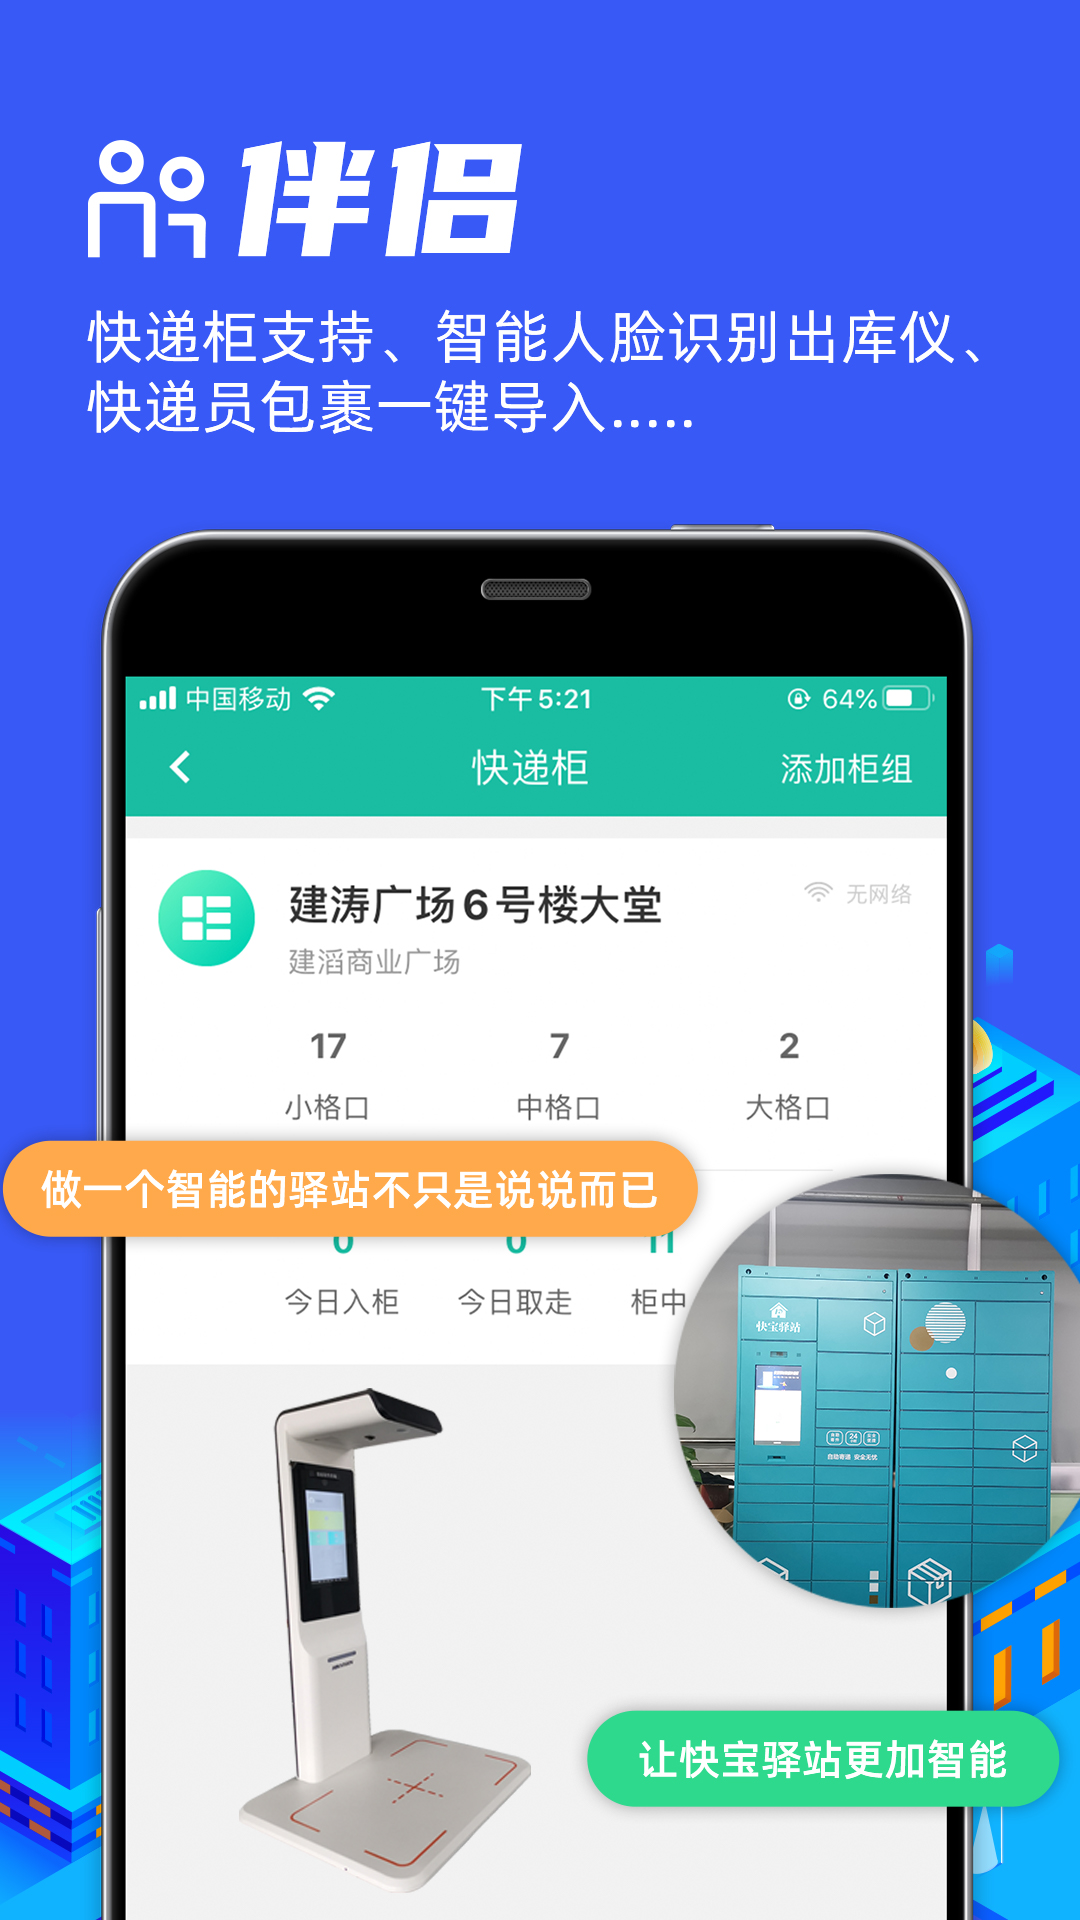 快宝驿站app截图4